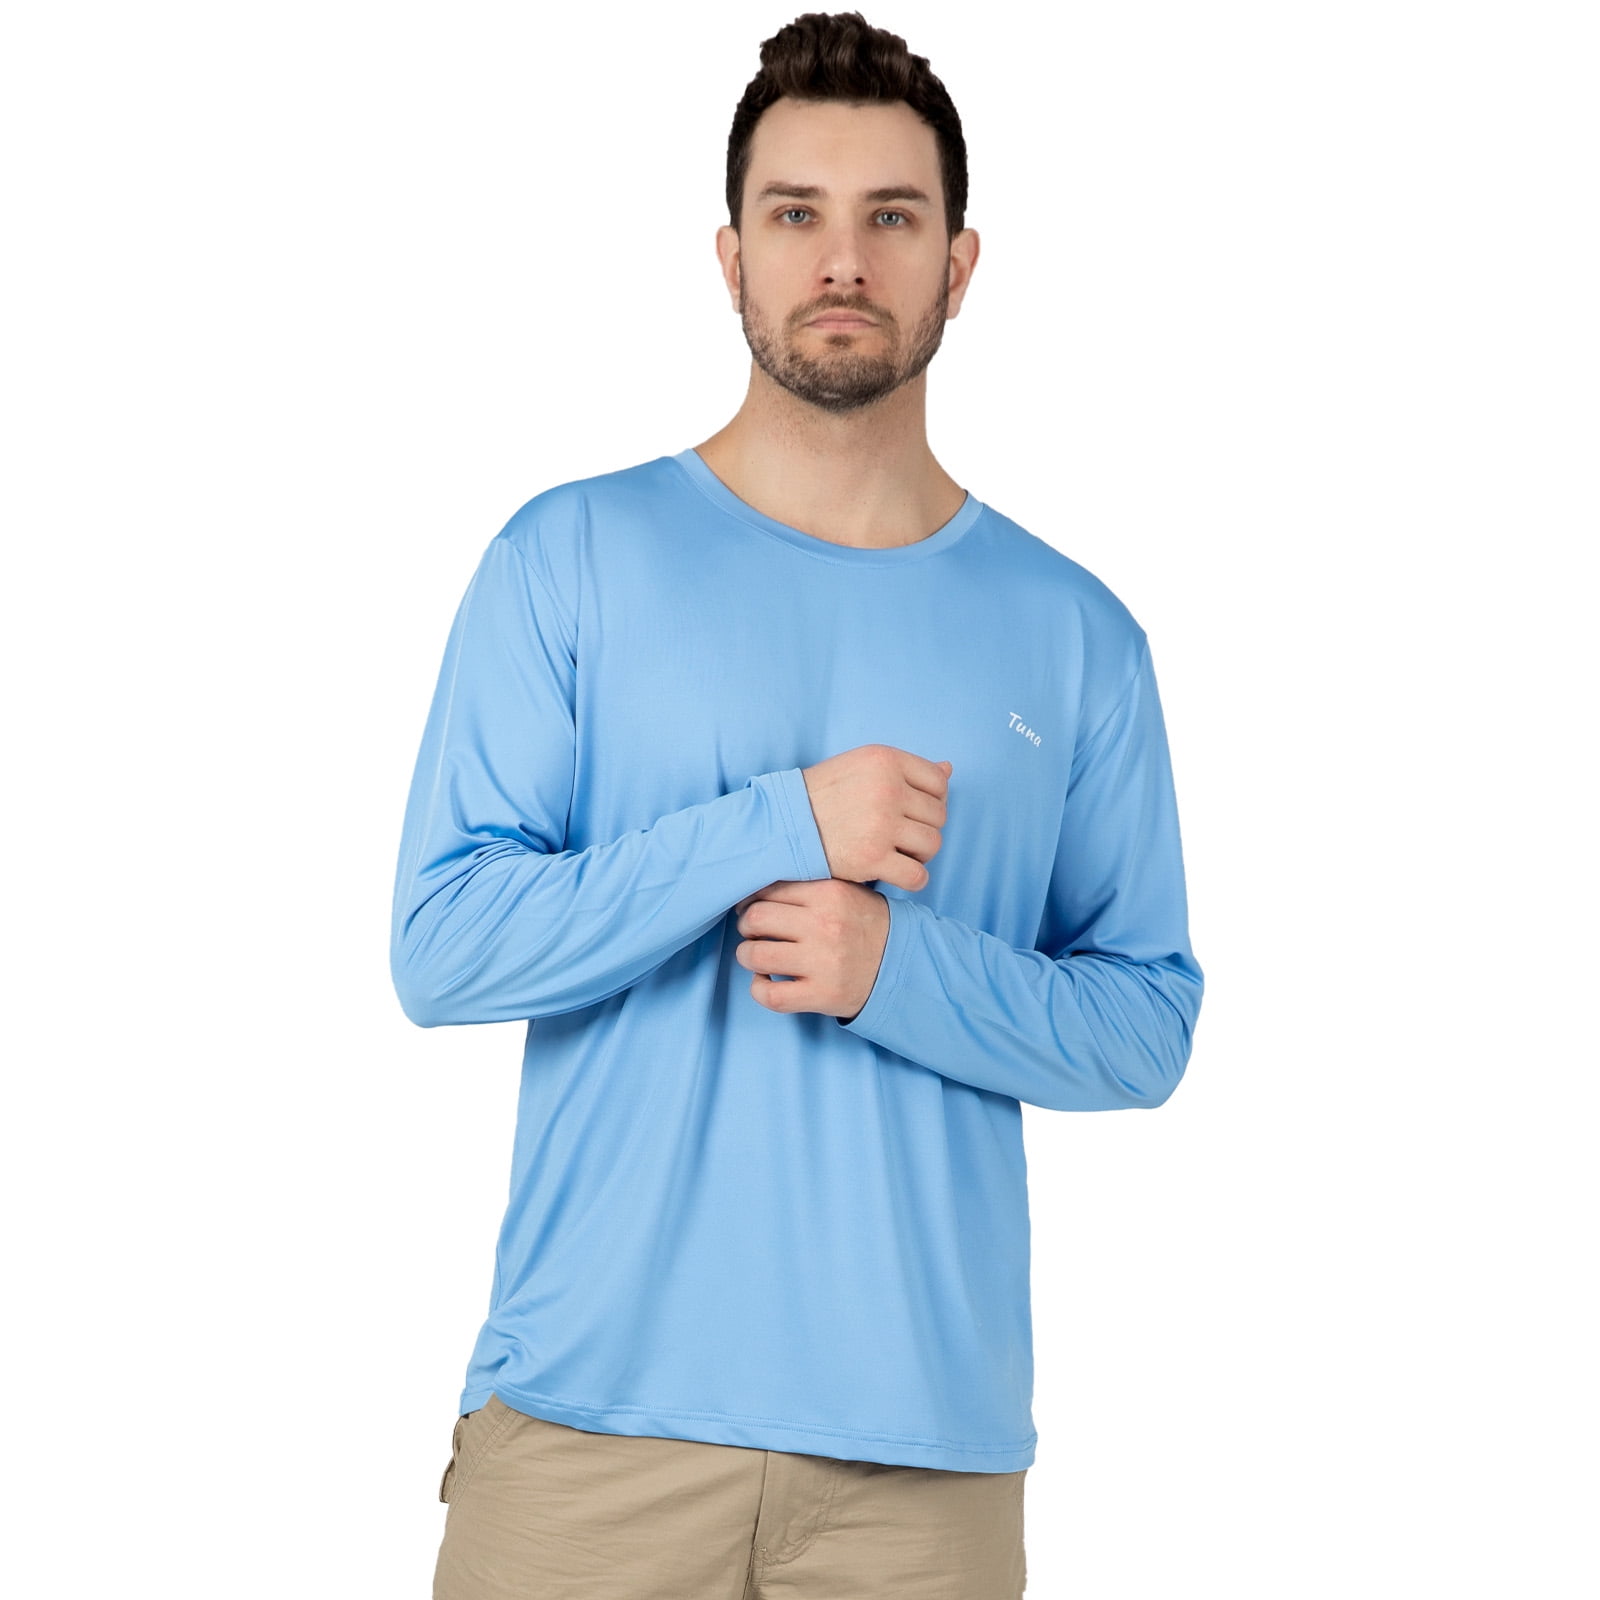 Tuna Fishing Shirts for Men Long Sleeve UPF 50+ UV Sun Protection Rash ...